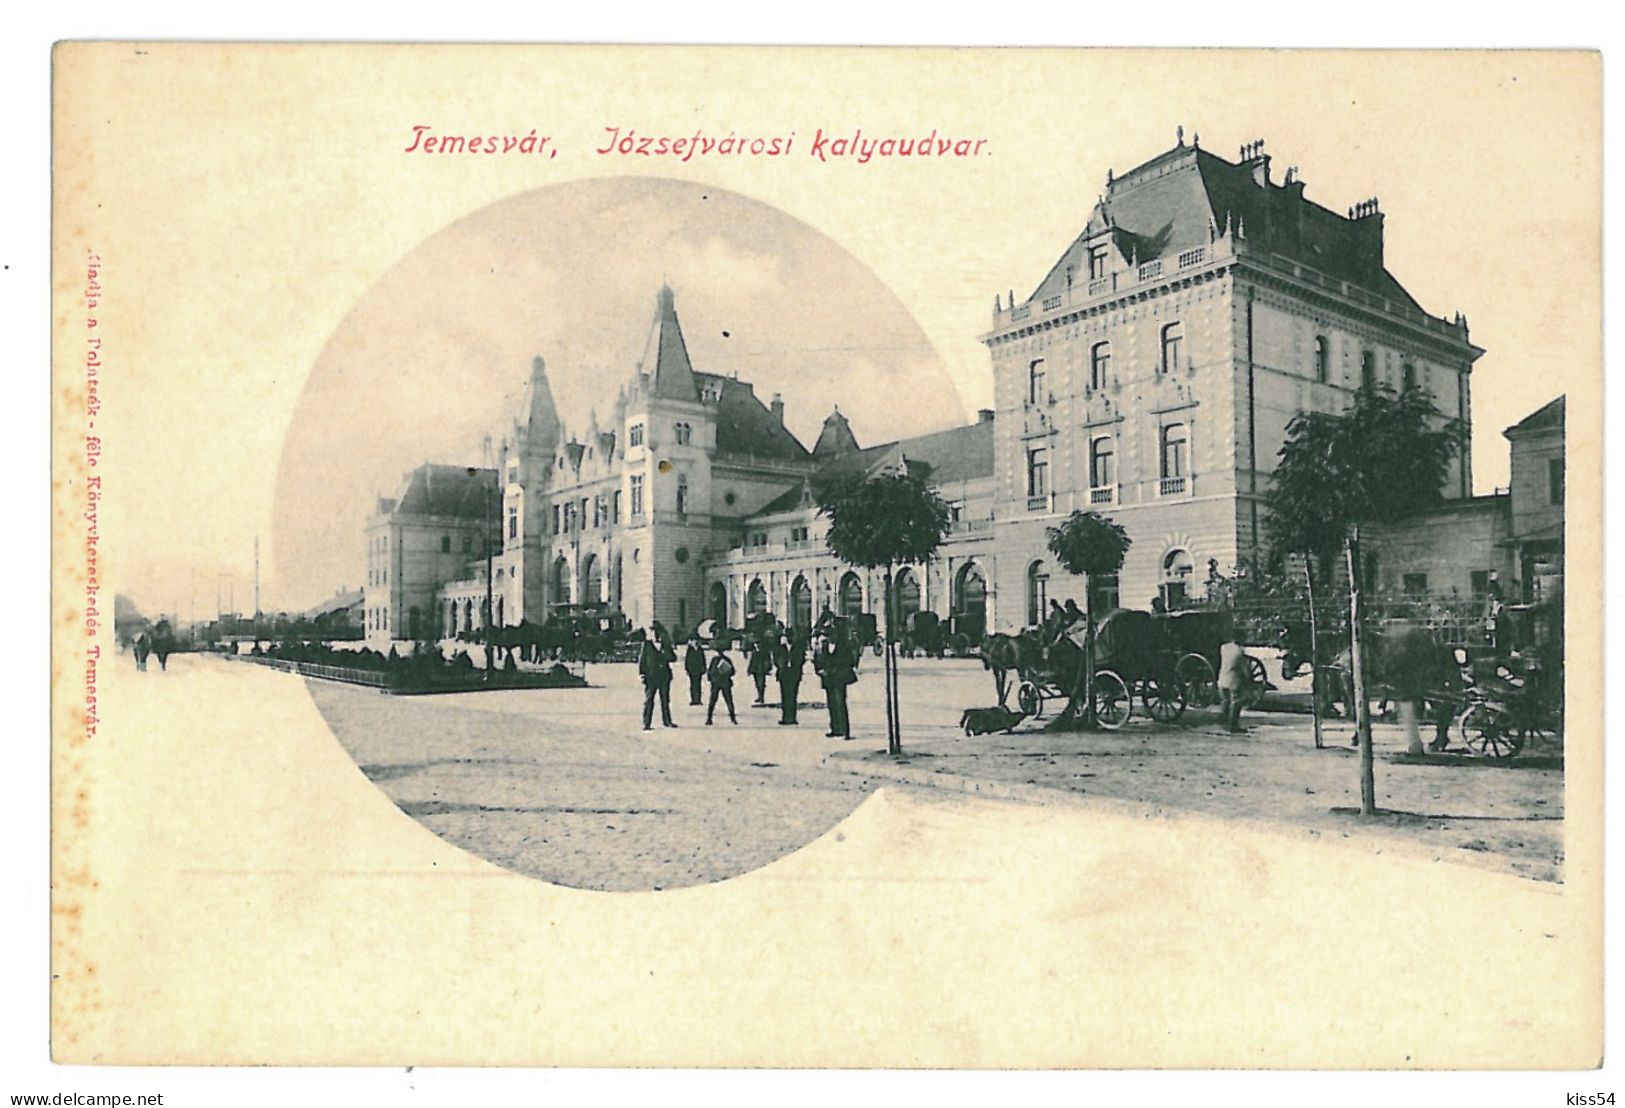 RO 47 - 11171 TIMISOARA, Romania, Railway Station - Old Postcard - Unused - Rumänien